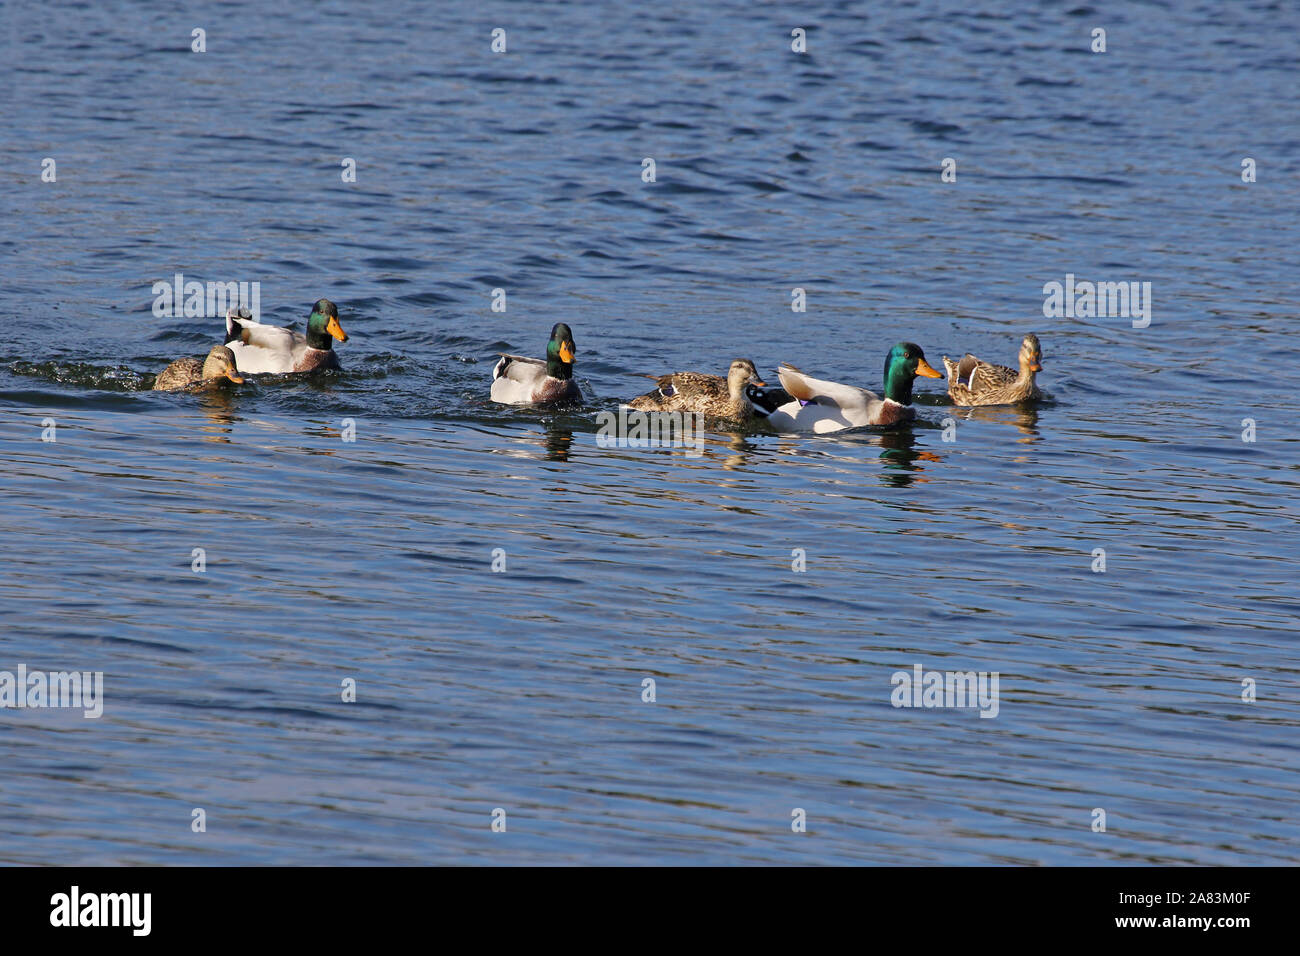 Drei paar Stockenten männlichen und weiblichen Enten lateinischer Name Anas platyrhynchos Familie Entenvögel schwimmen in einem See in Porto Potenza Picena in Italien Stockfoto